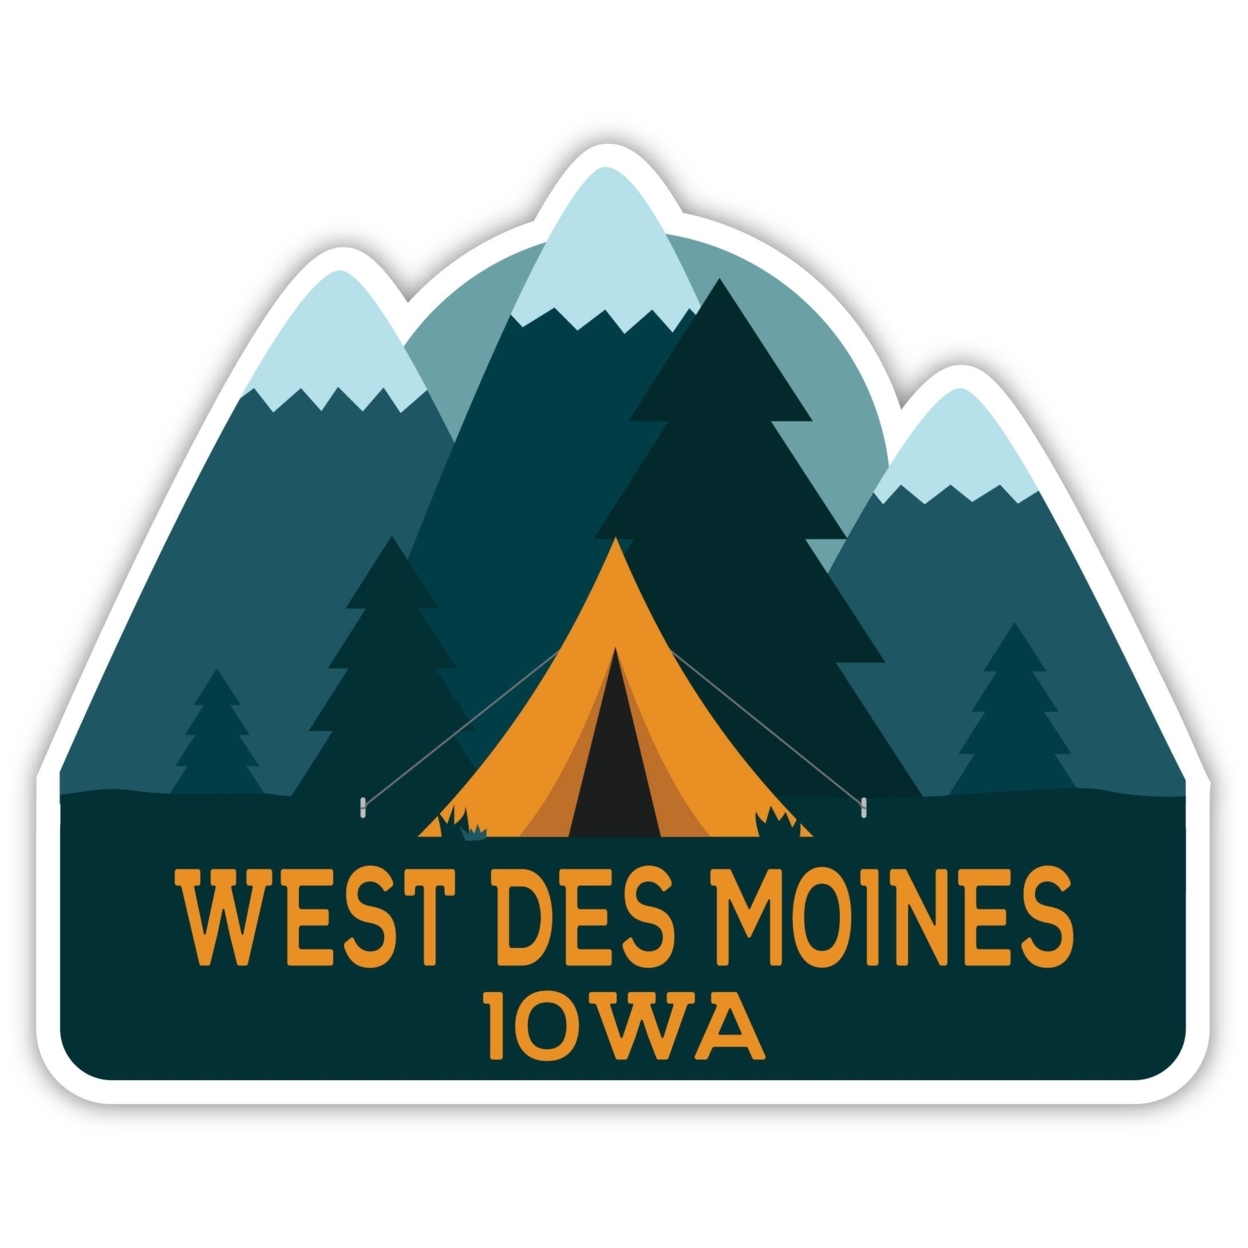 West Des Moines Iowa Souvenir Decorative Stickers (Choose Theme And Size) - Single Unit, 4-Inch, Camp Life